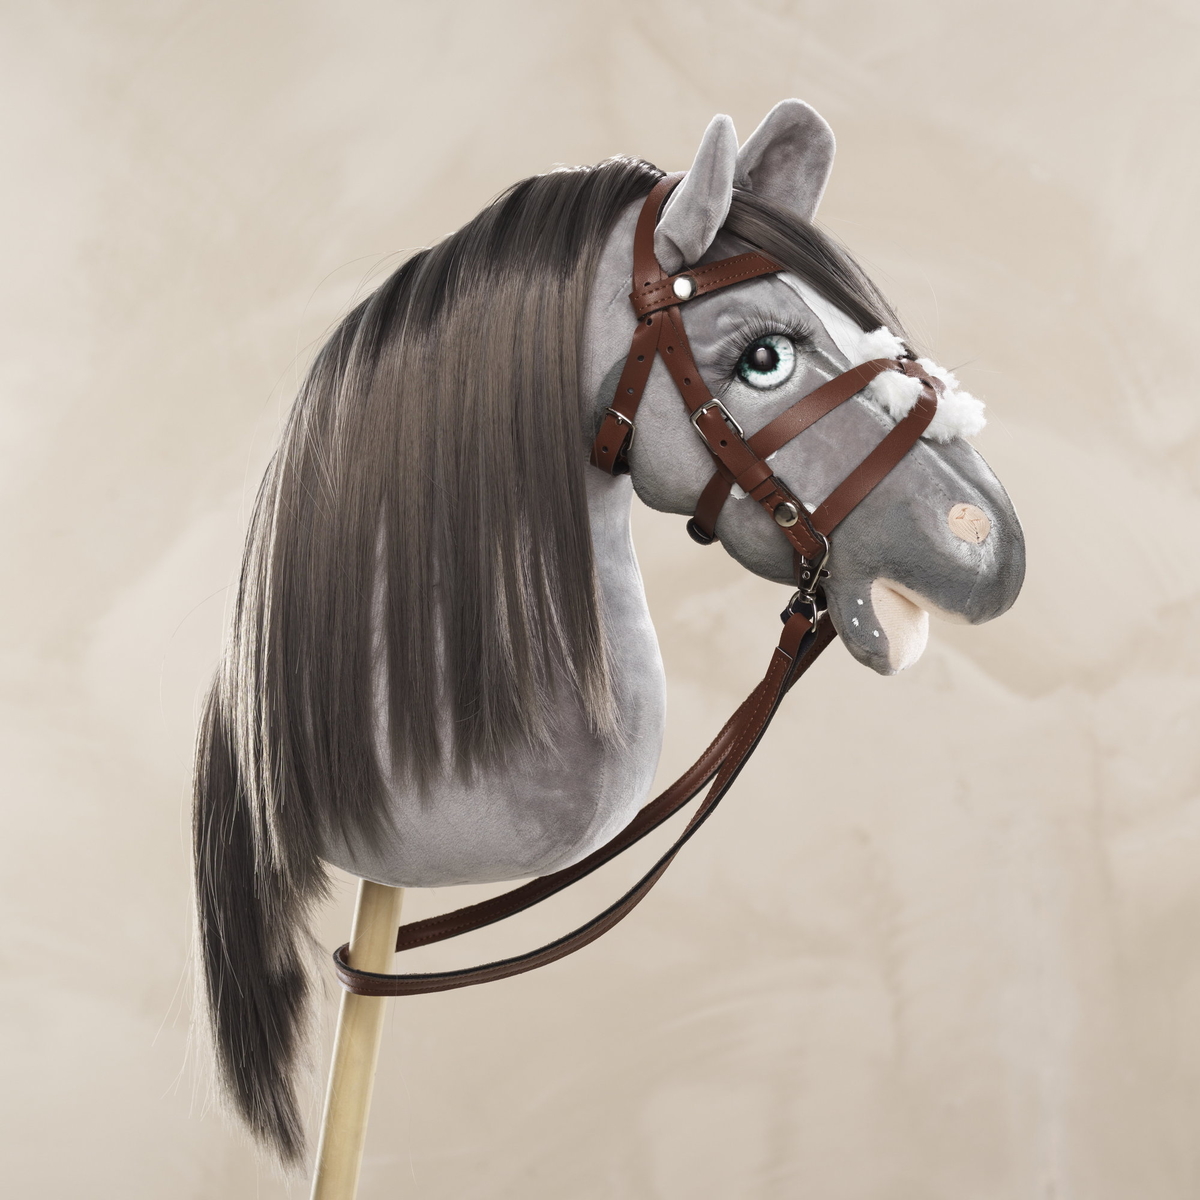 Guide: Lav en Welsh pony-kæphest